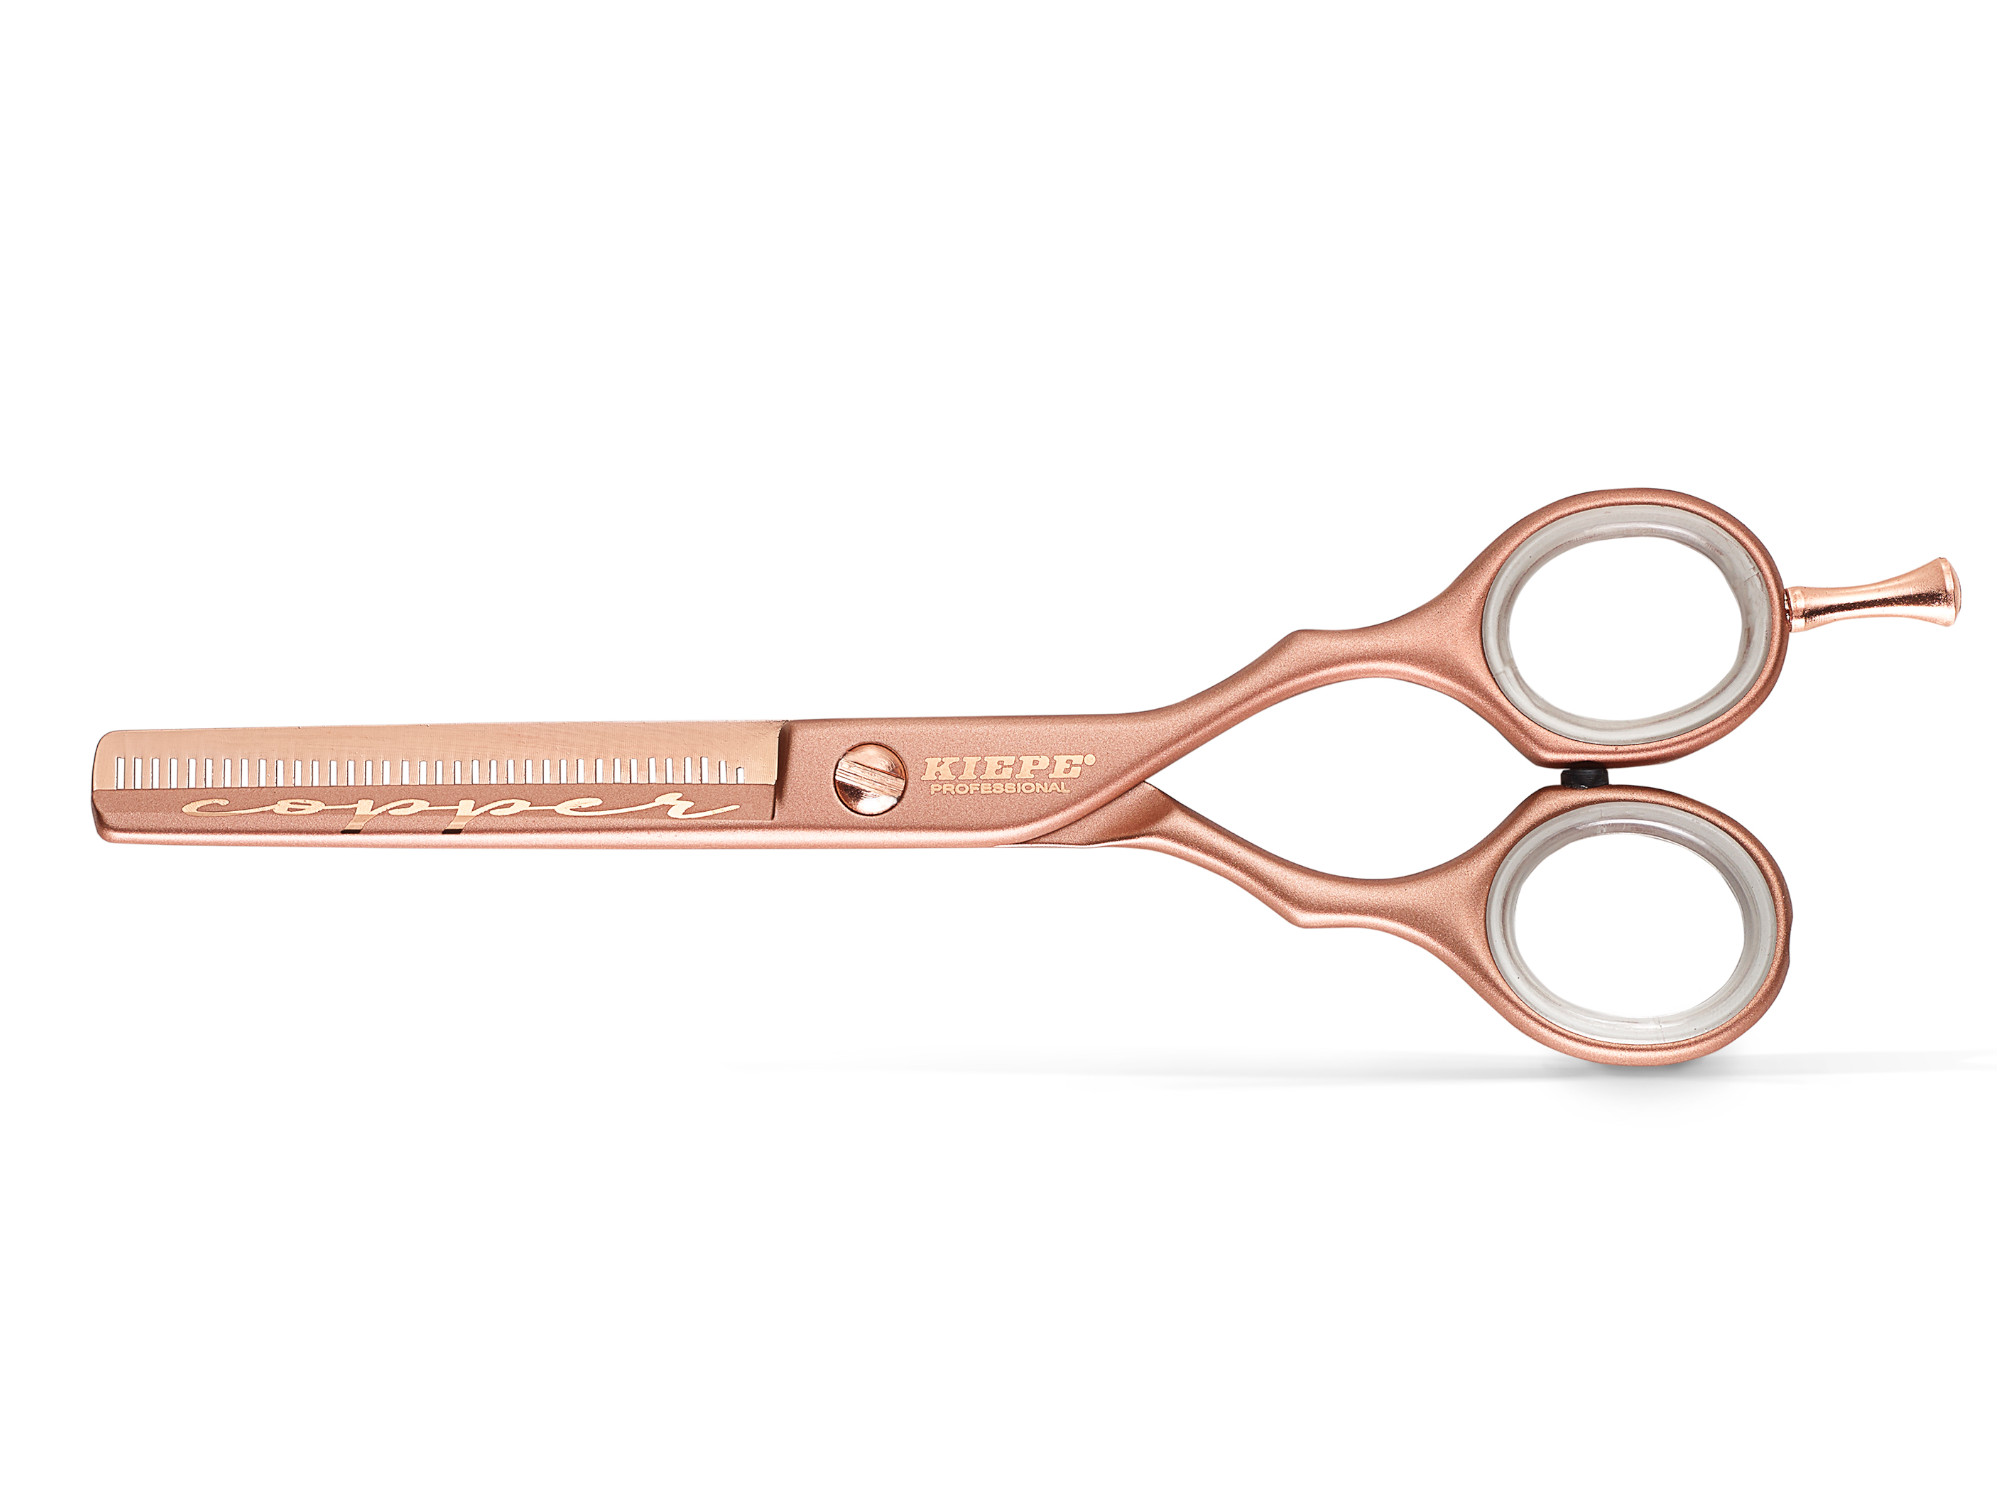 Efilační nůžky Kiepe Luxury Premium Copper 5,5" měděné, 38 zubů (2473/5.5) + dárek zdarma